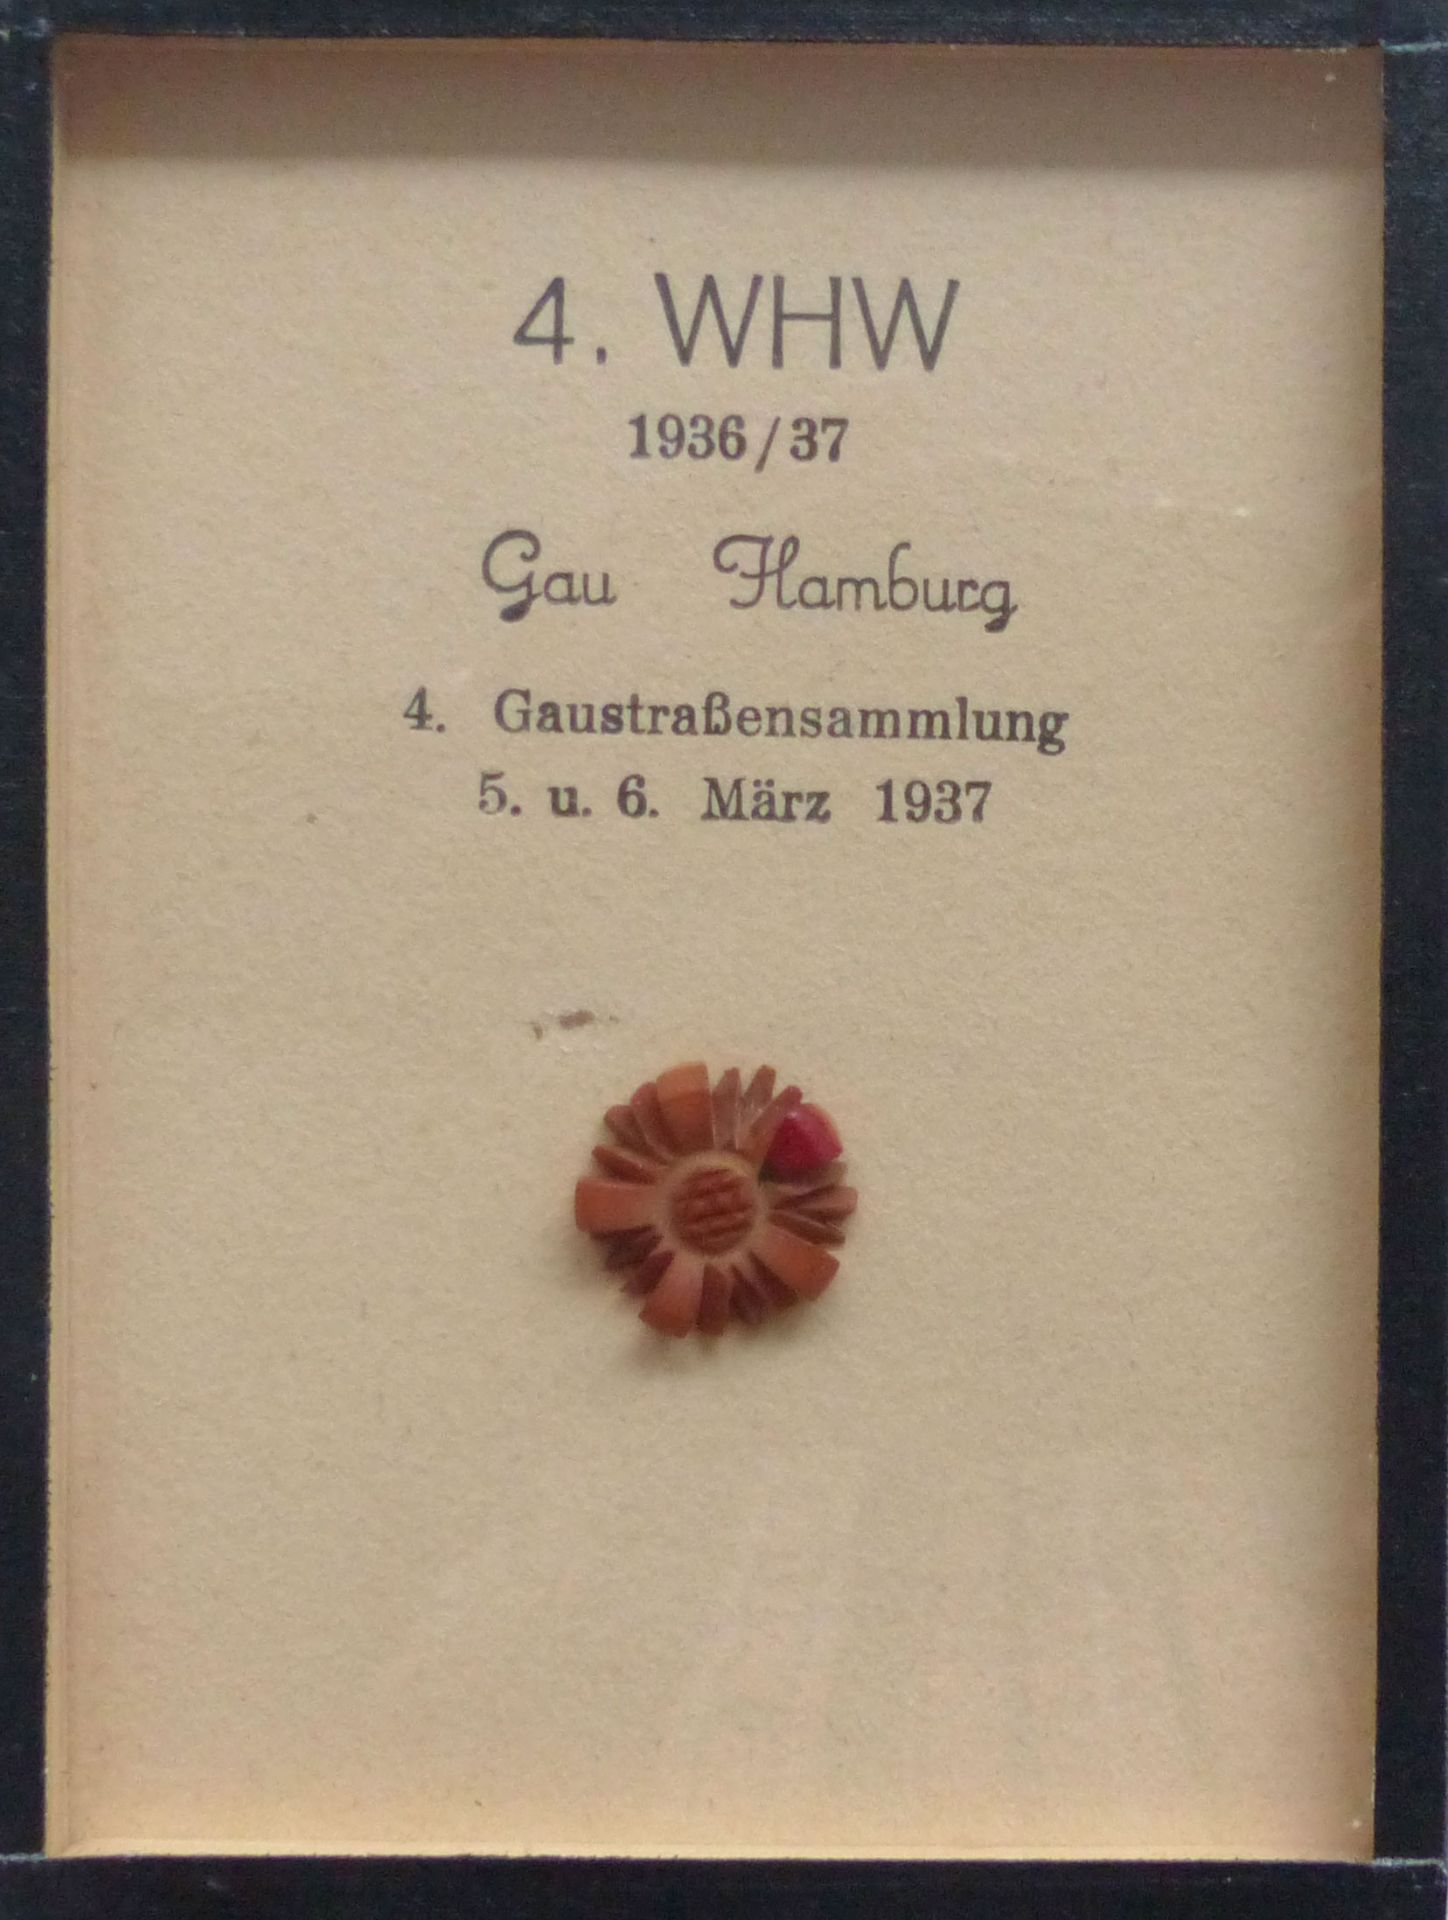 WHW Gau Hamburg Gaustraßensammlung März 1937 Abzeichen im Rahmen 9x12 cm I-II